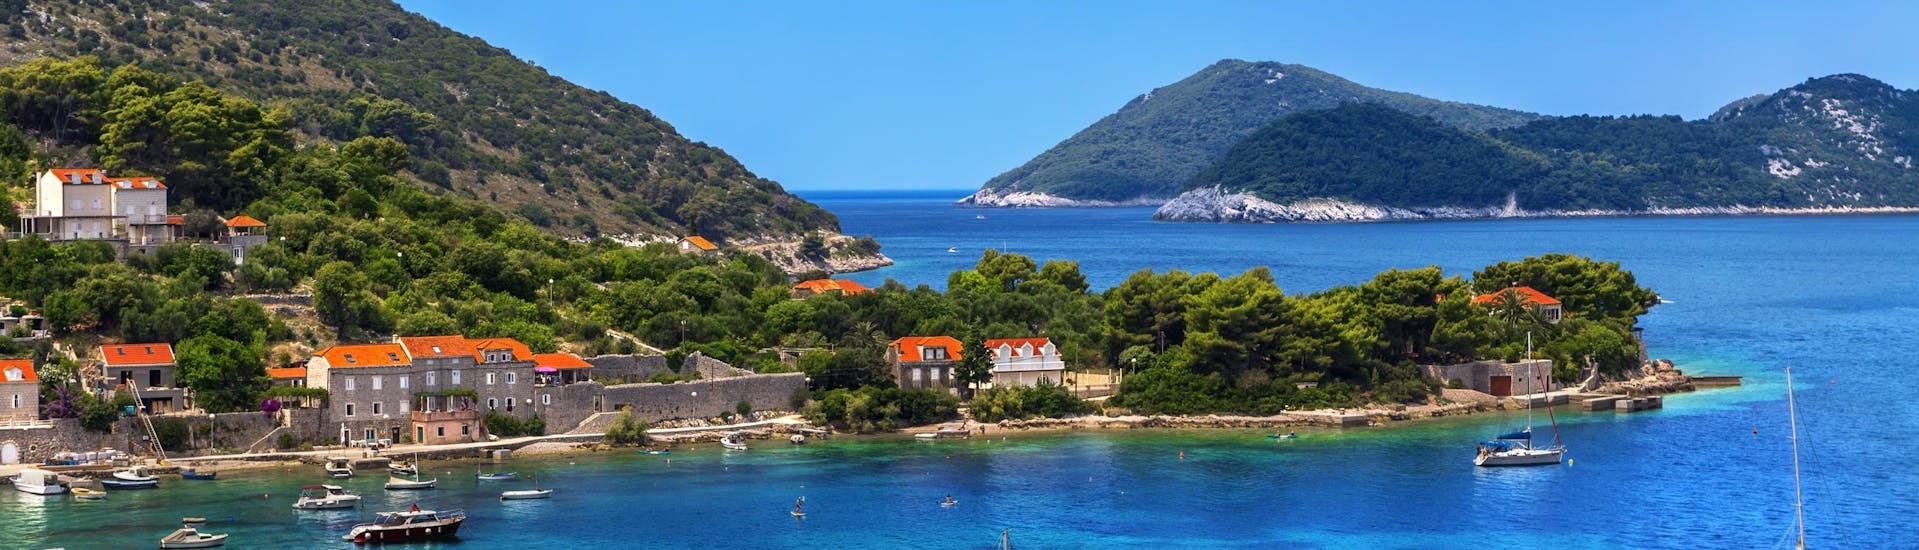 Bild der Insel Kolocep, die zu den Elaphiti-Inseln vor der Küste Dubrovniks gehört und ein beliebtes Ziel für Bootsausflüge ist.